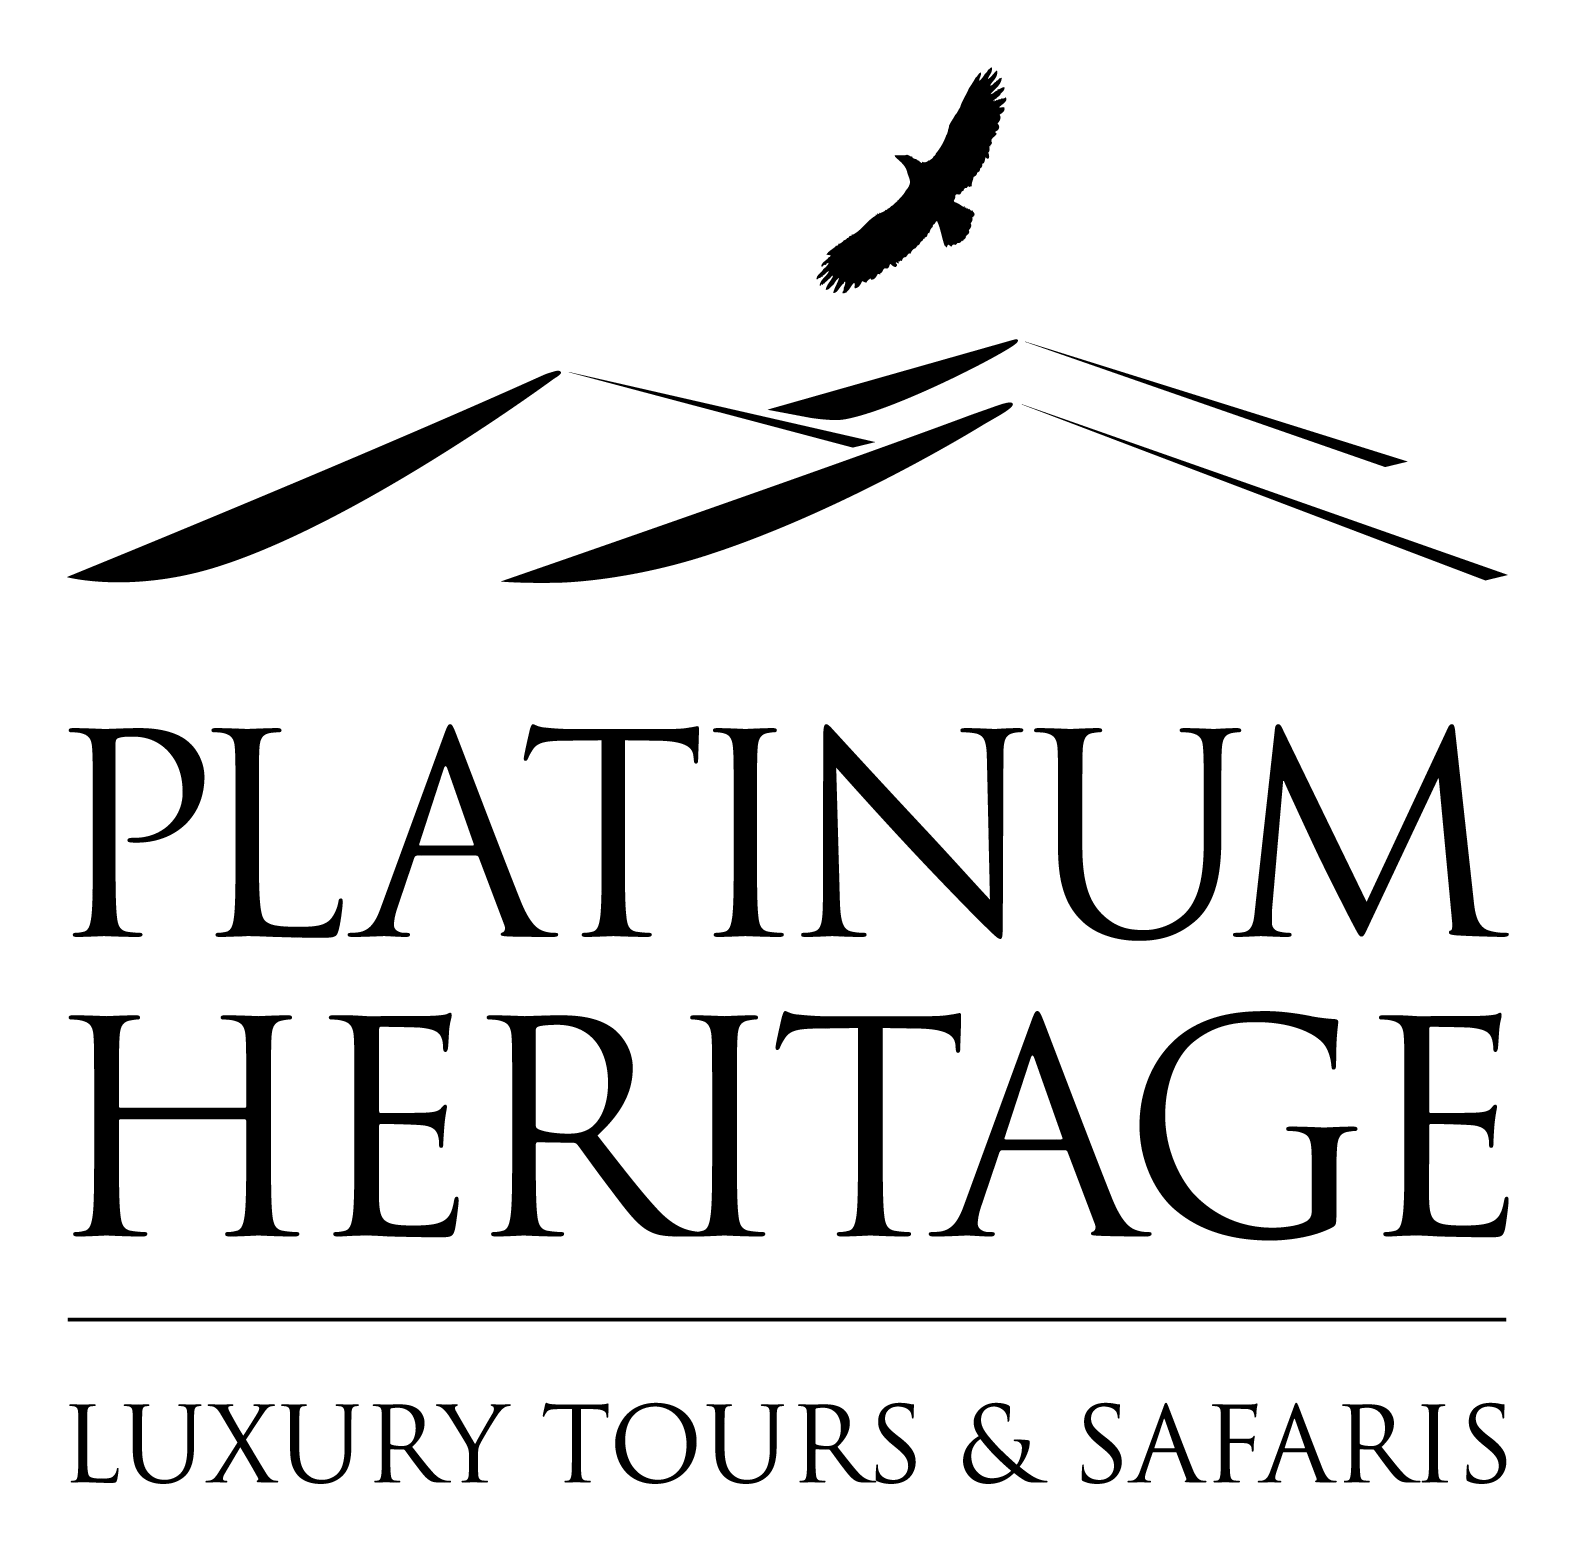 Platinum Heritage Tourism LLC